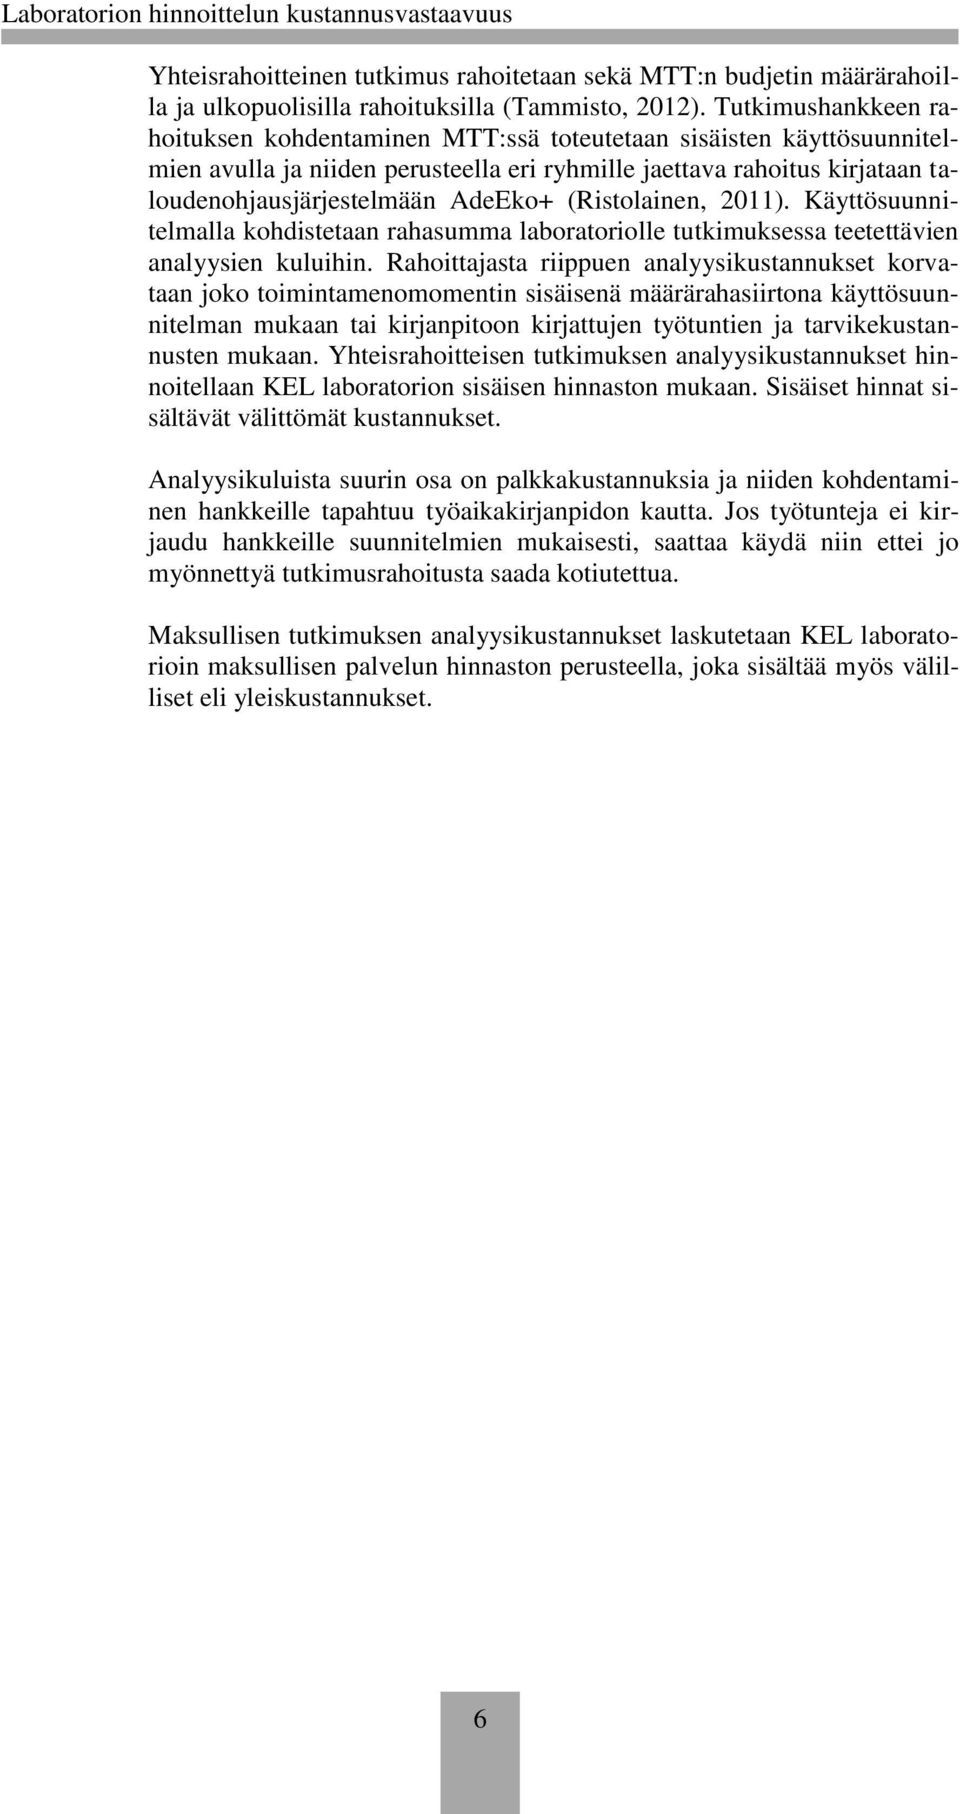 (Ristolainen, 2011). Käyttösuunnitelmalla kohdistetaan rahasumma laboratoriolle tutkimuksessa teetettävien analyysien kuluihin.